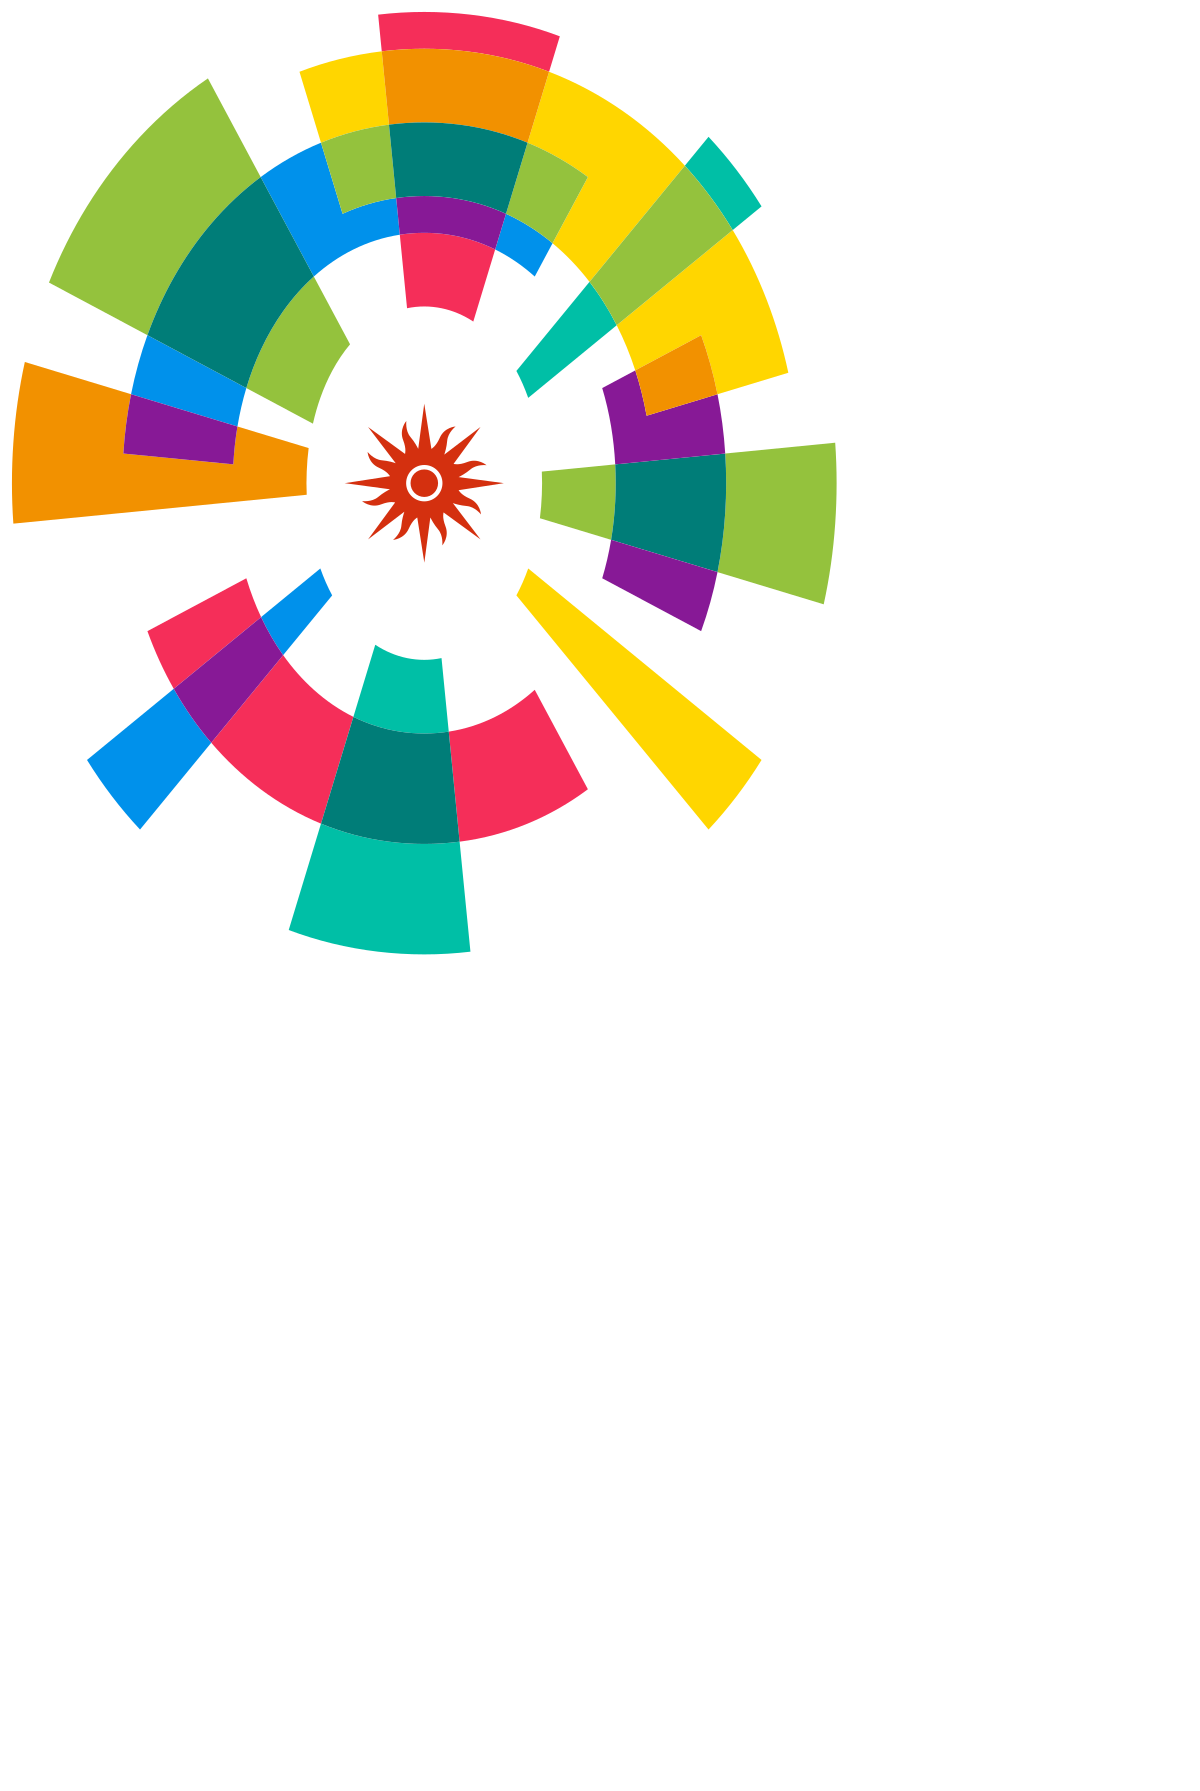 Jakarta - Palembang 2018